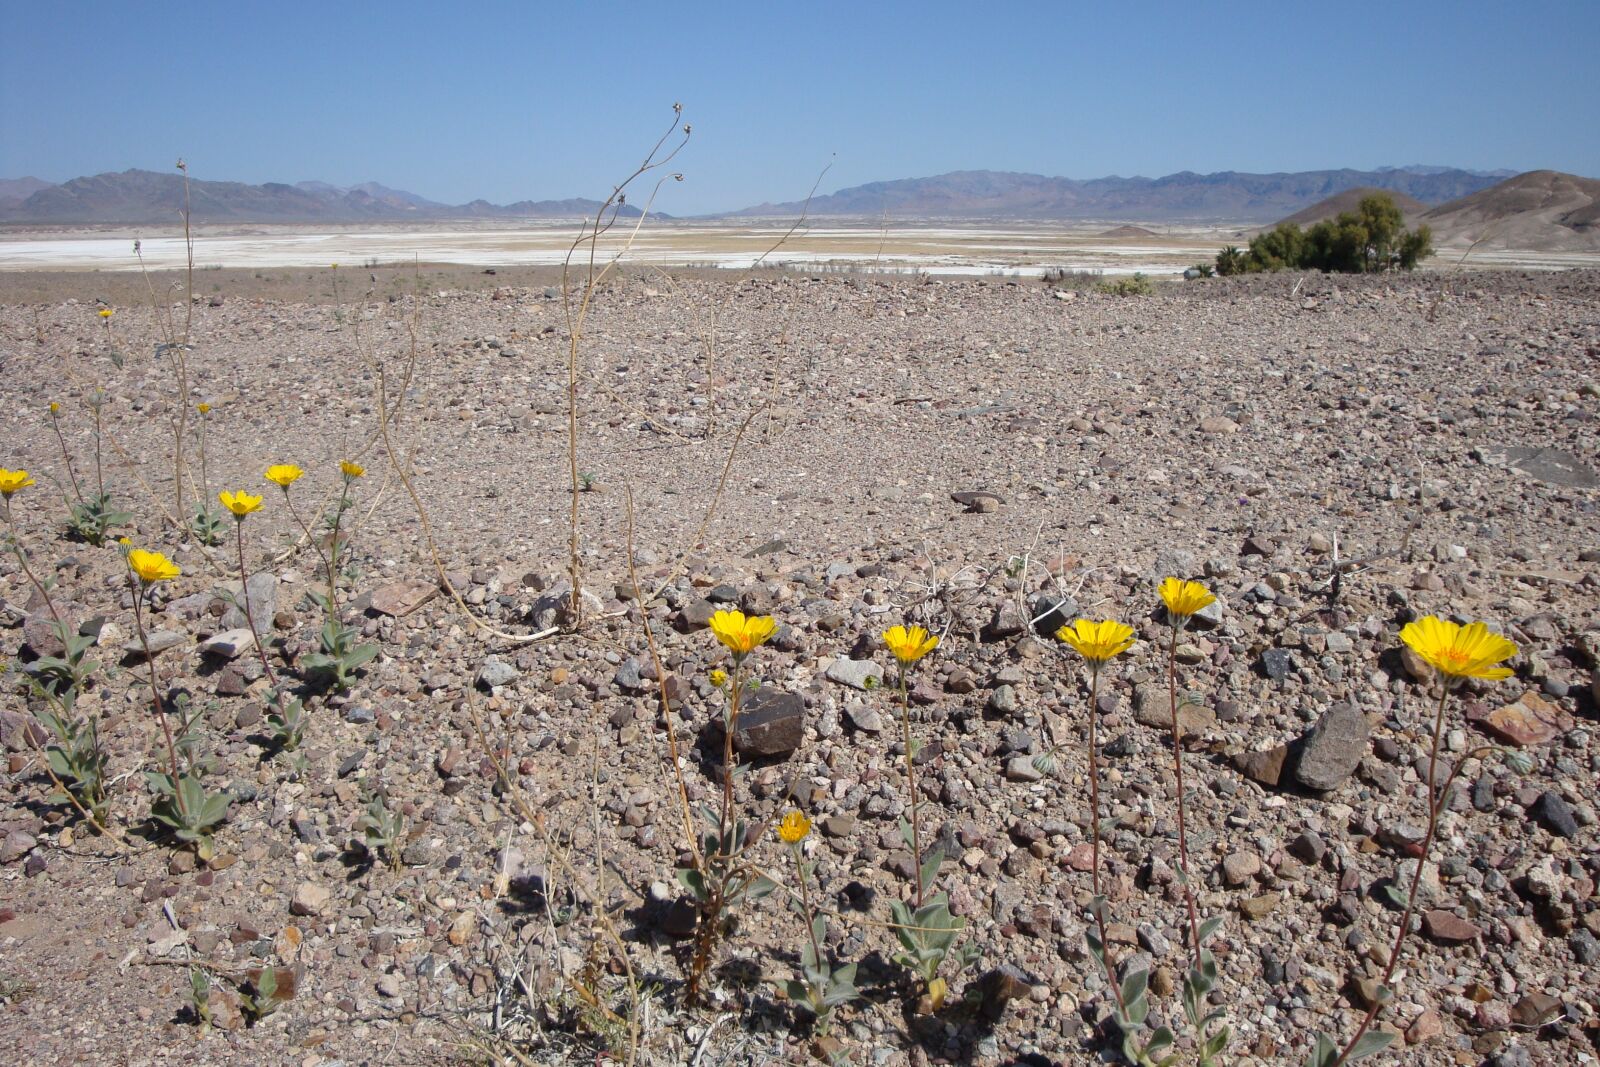 Sony Cyber-shot DSC-W150 sample photo. Desert, flowers, desert flowers photography